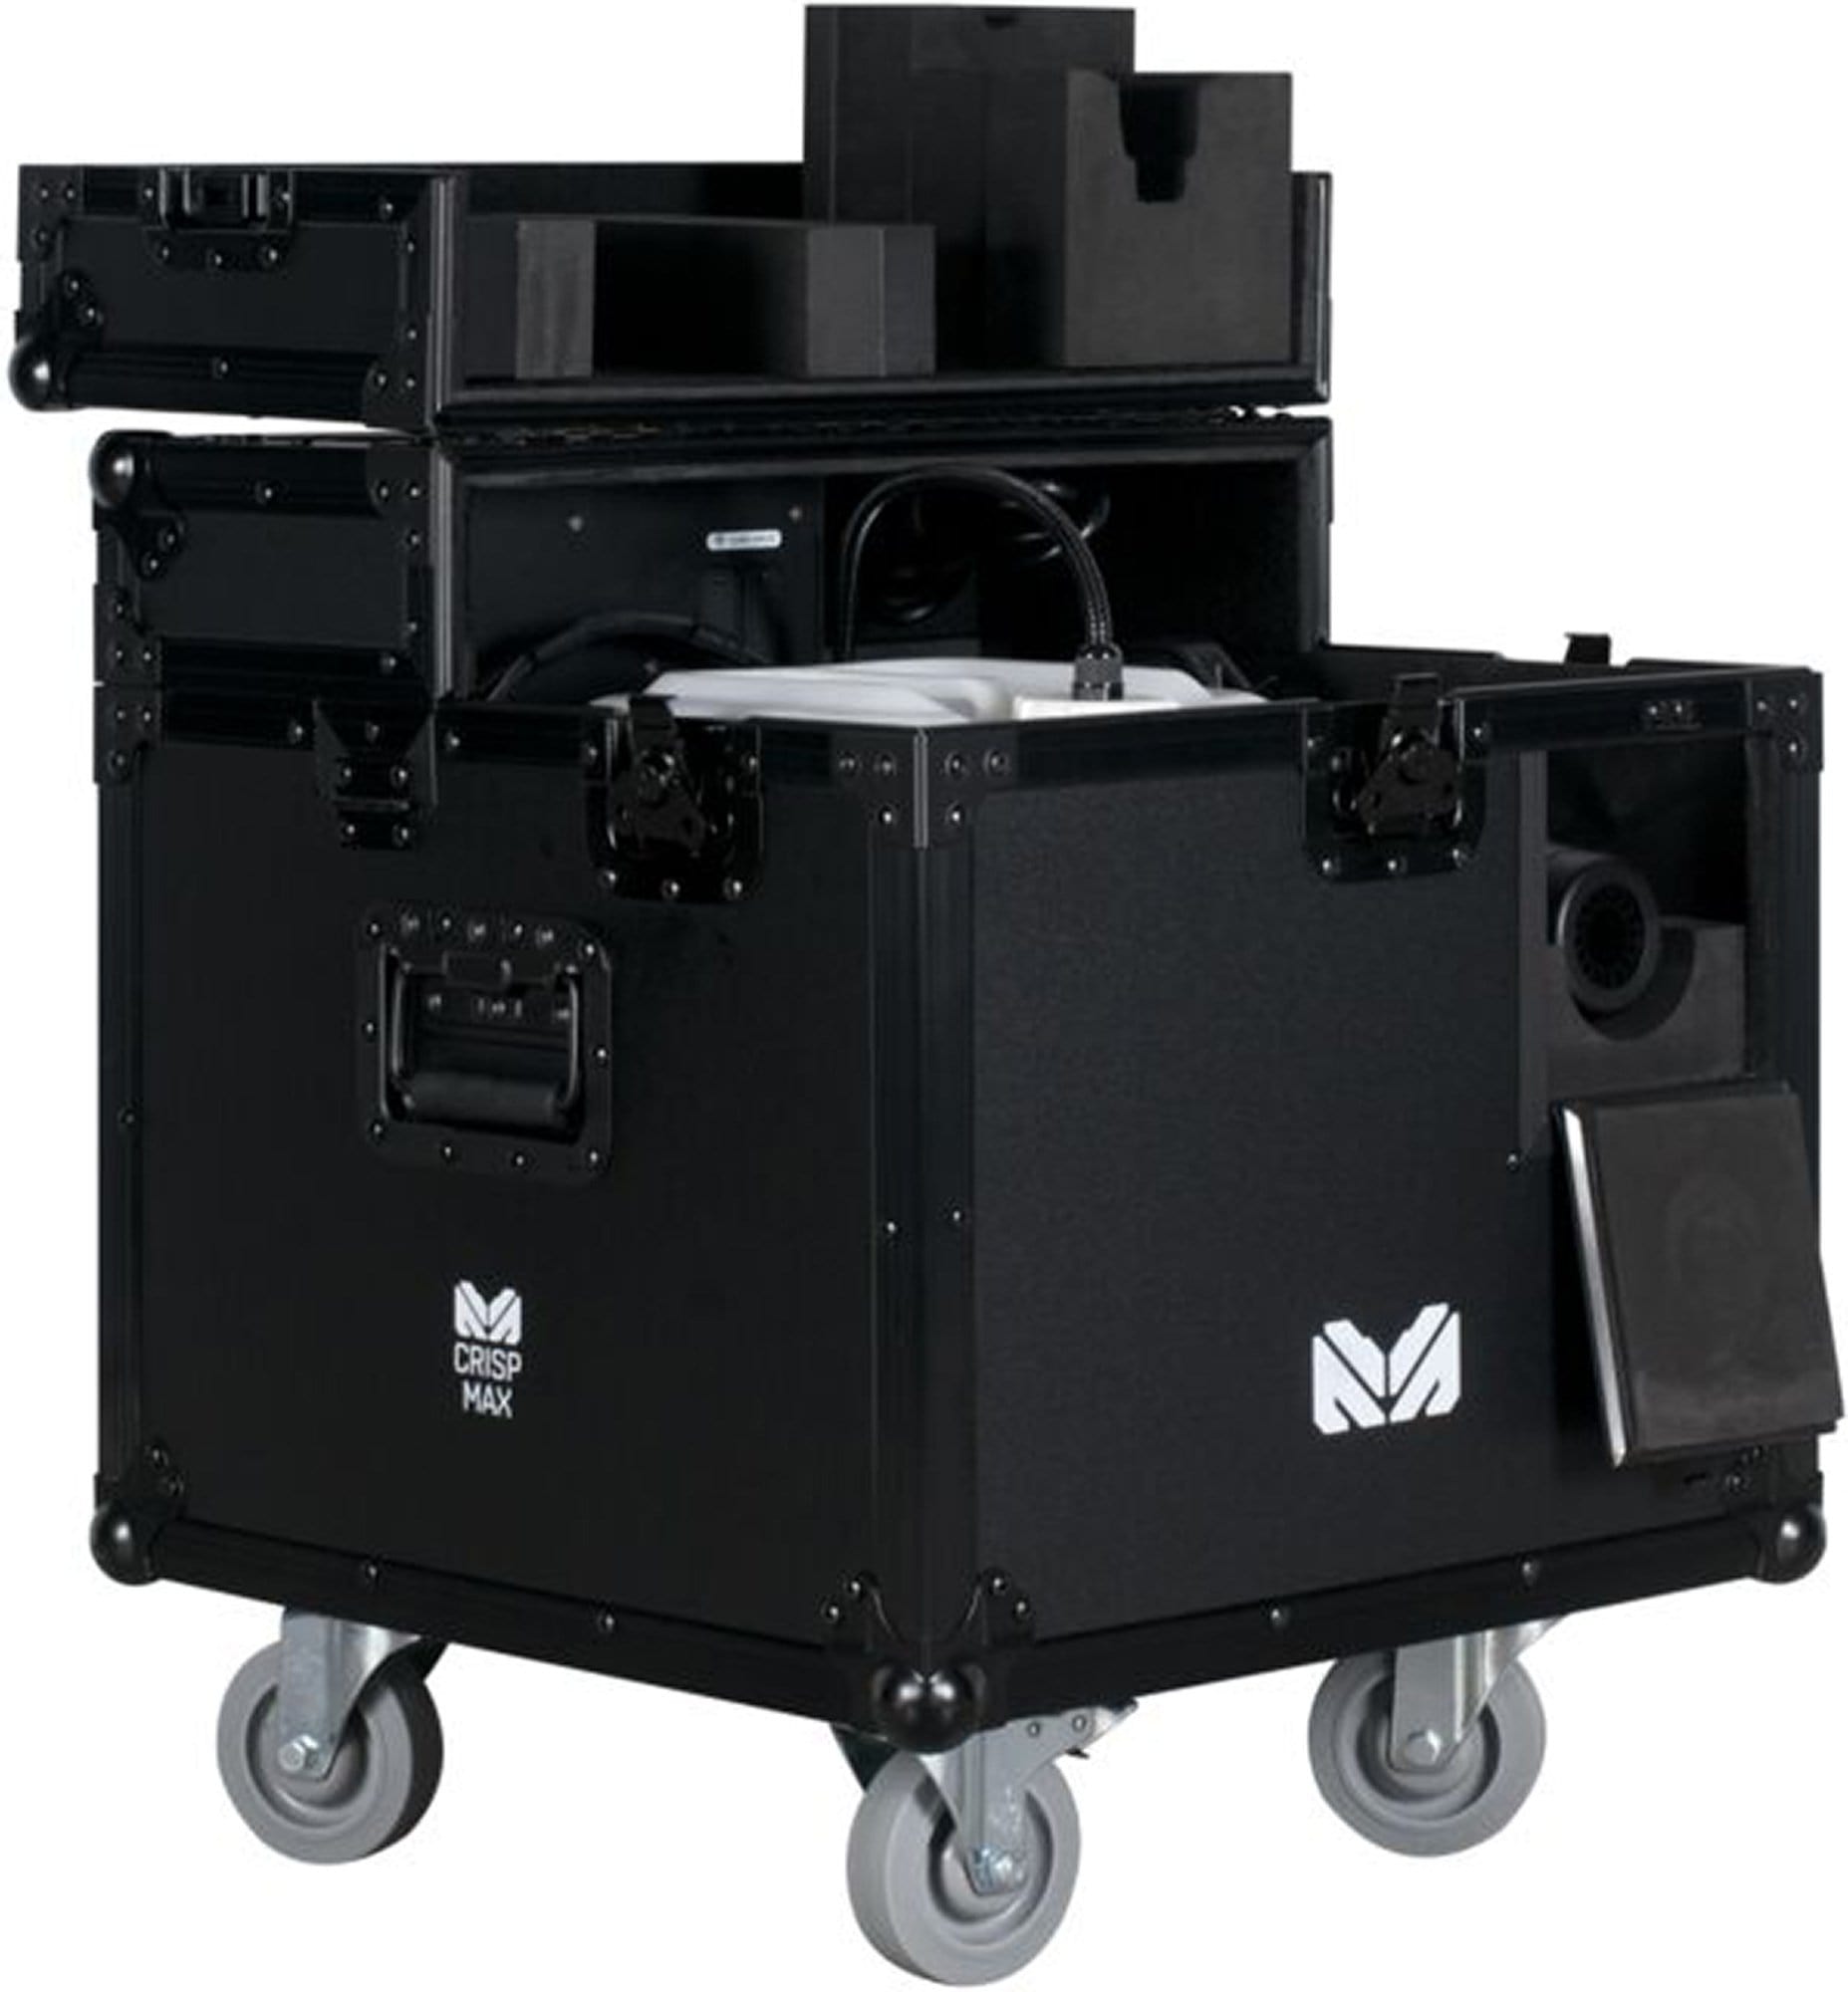 Magmatic Crisp Max 1550-Watt High Power Snow Machine - ProSound and Stage Lighting